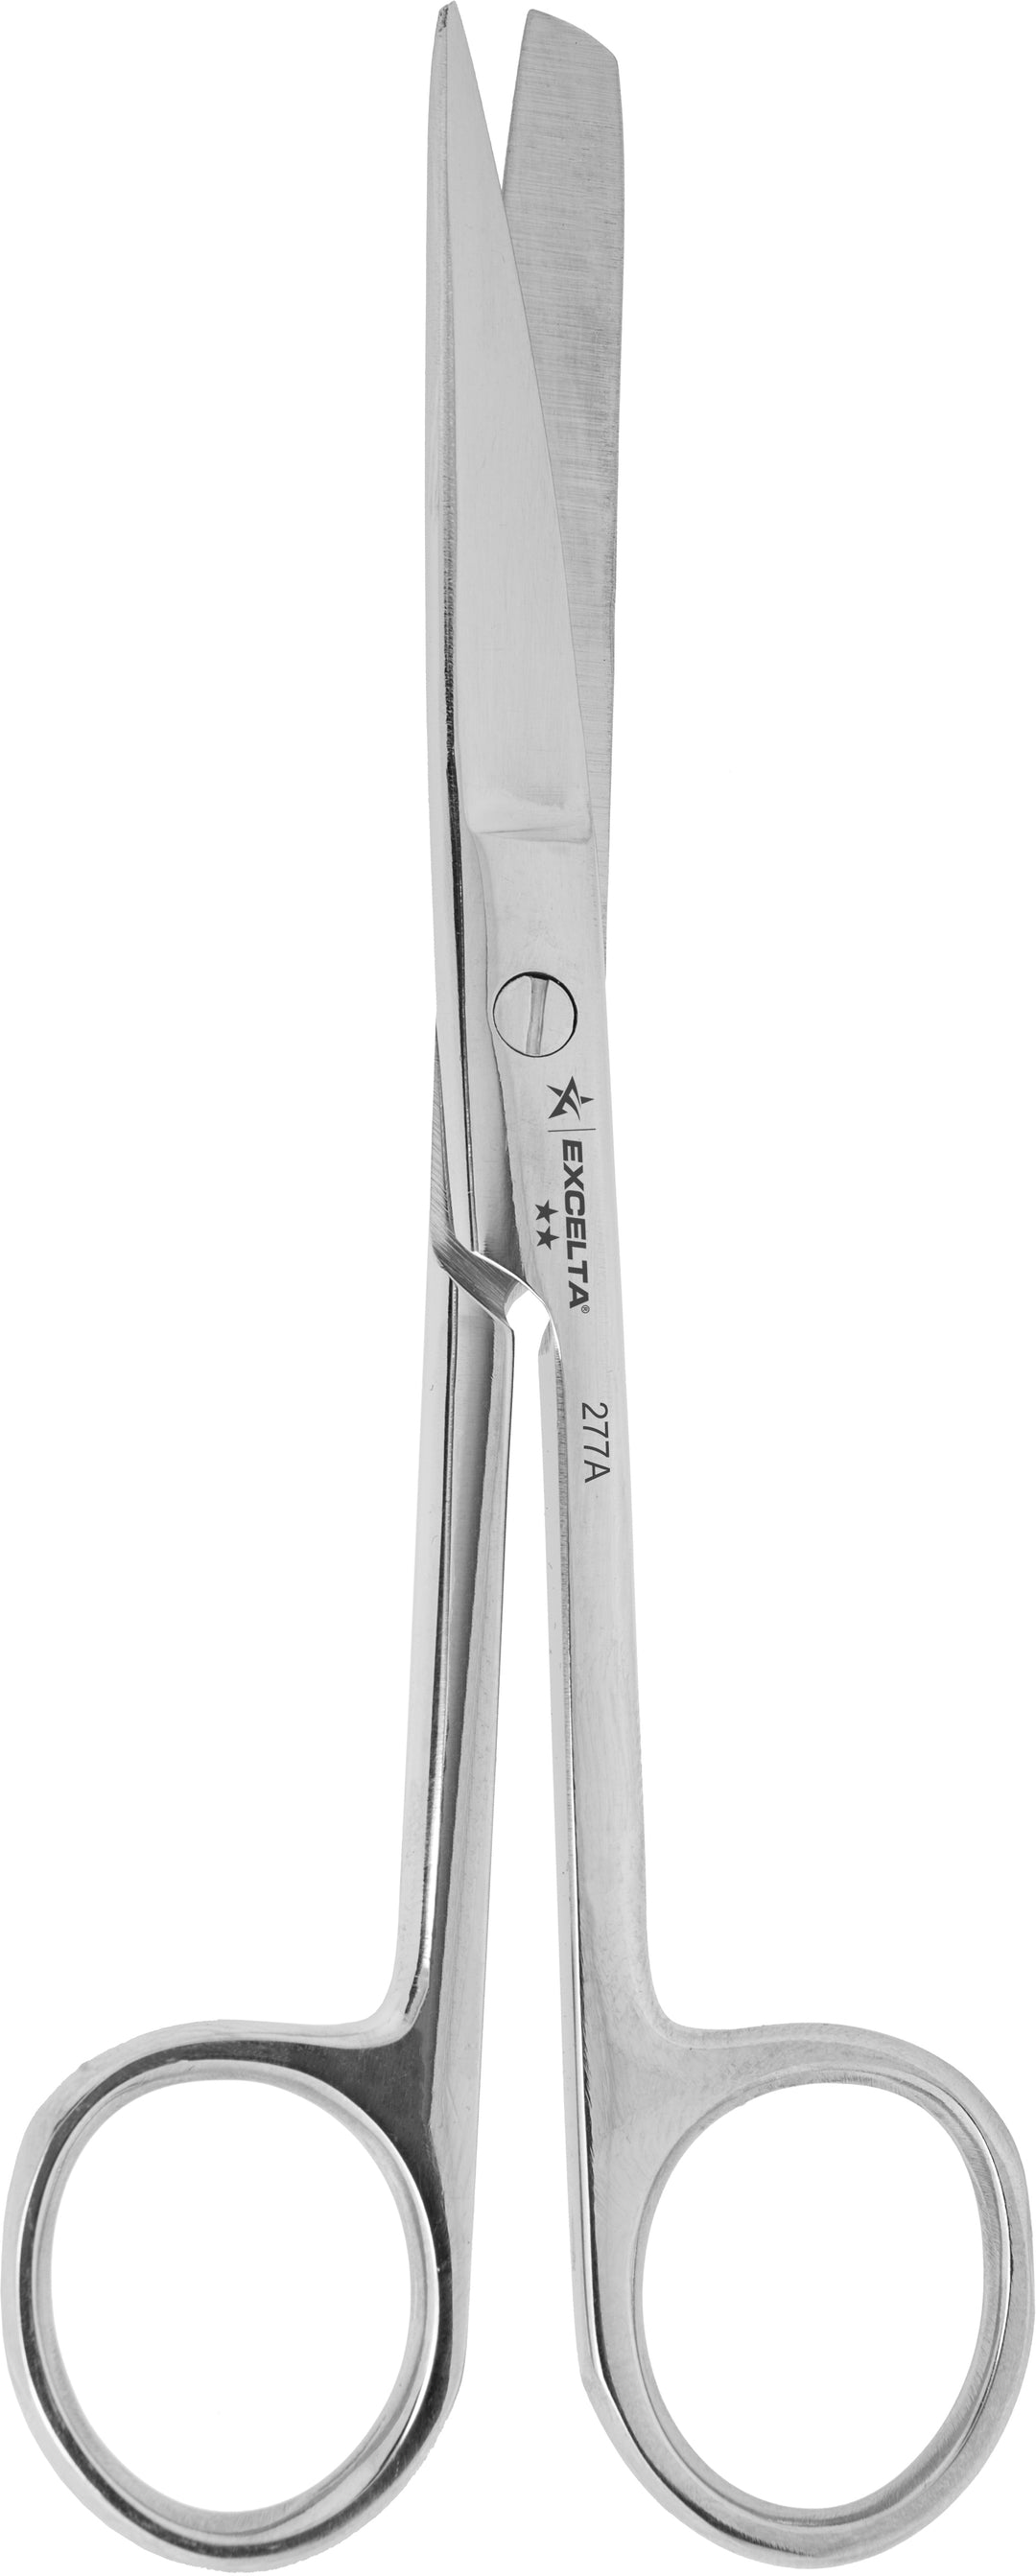 Excelta 277A Scissors - Fine 1.5" Blade - SS - Oal 5.5" - Round Blunt Blades